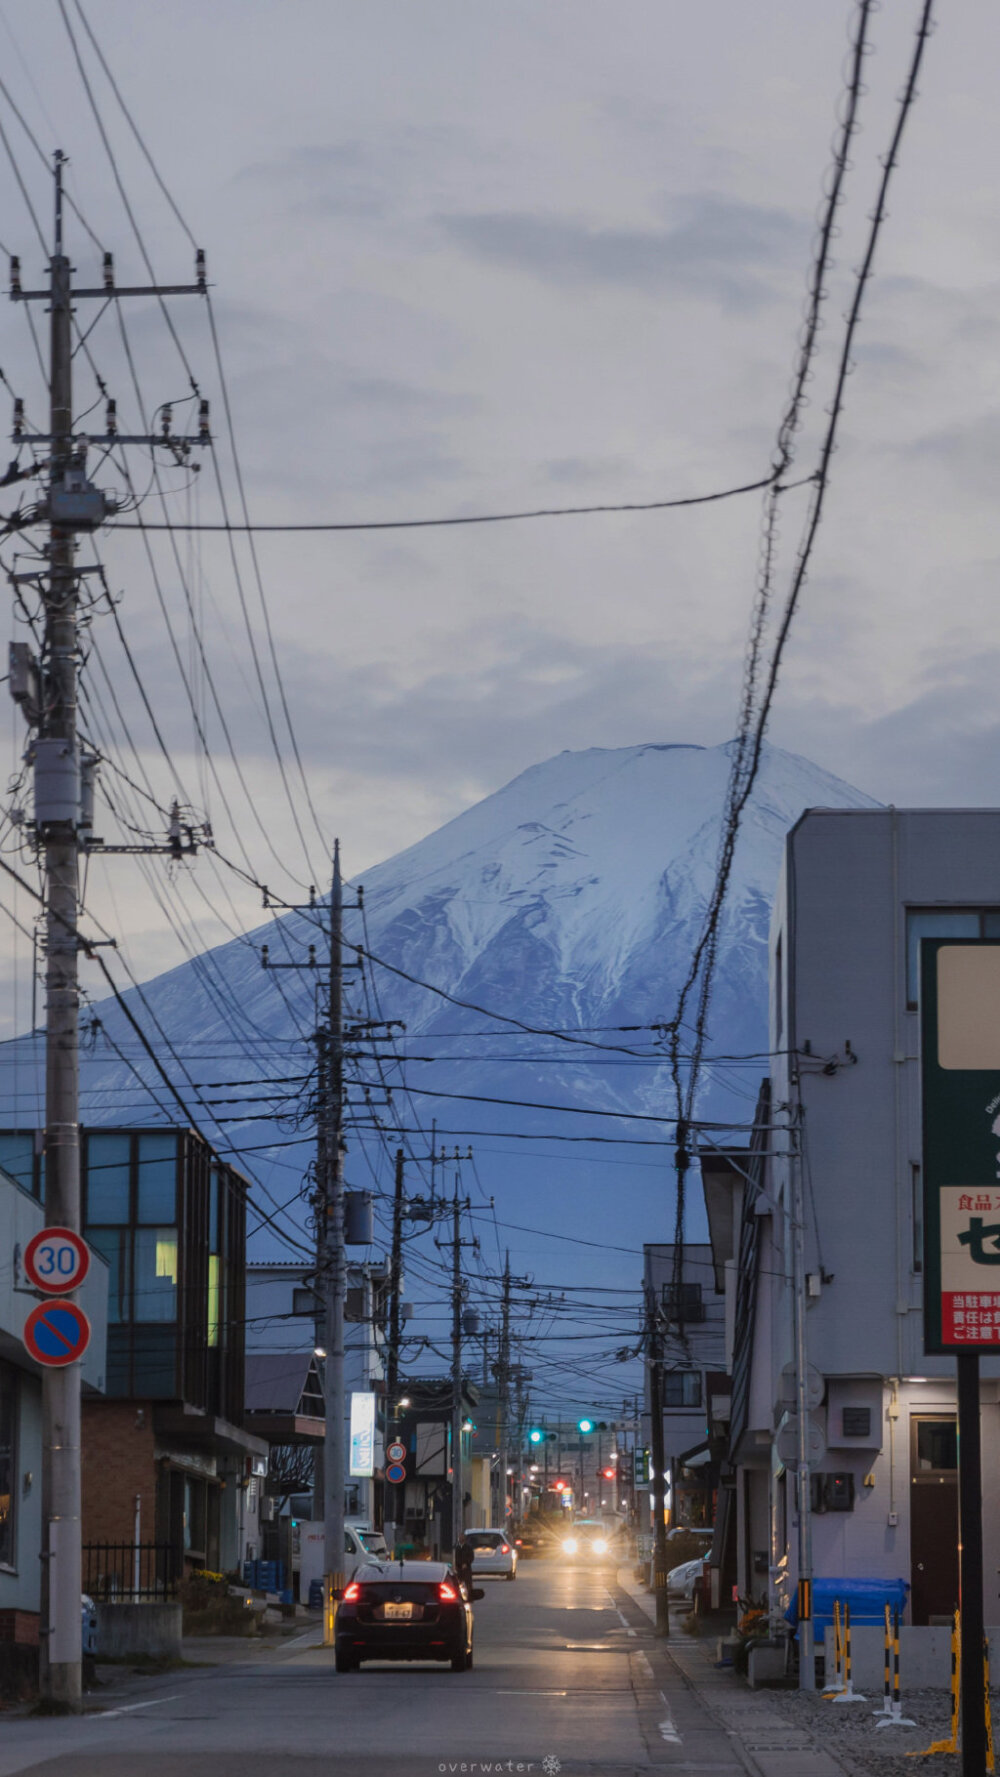 「东京.富士山」 ​​​​
摄影：@overwater ​​​